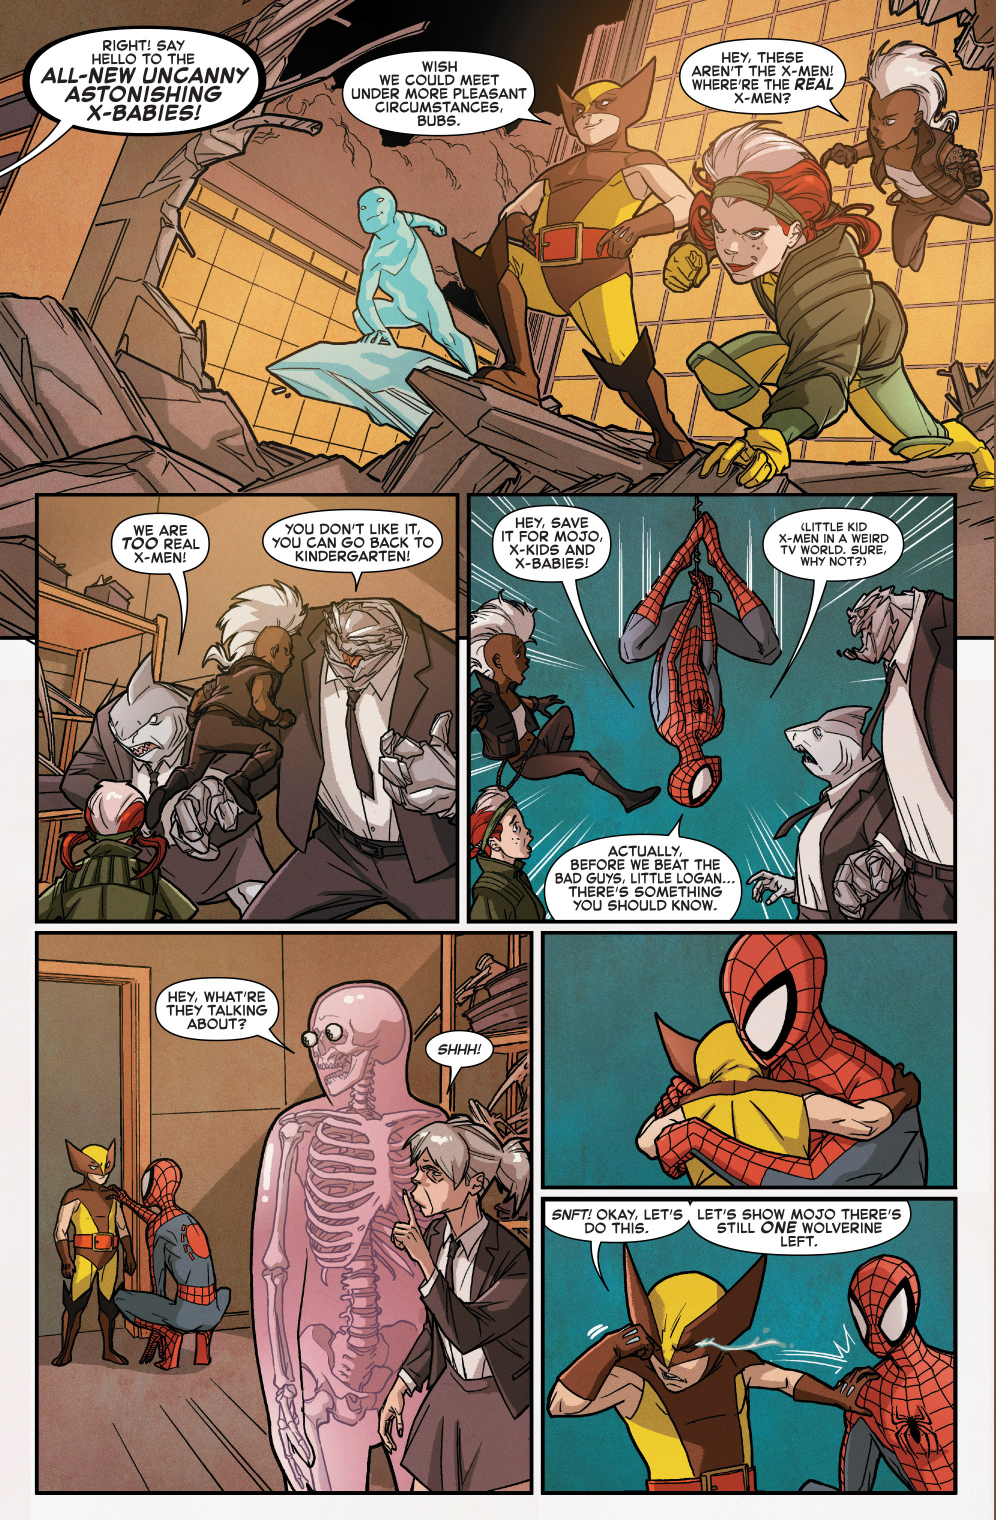 spider-man comforts little wolverine